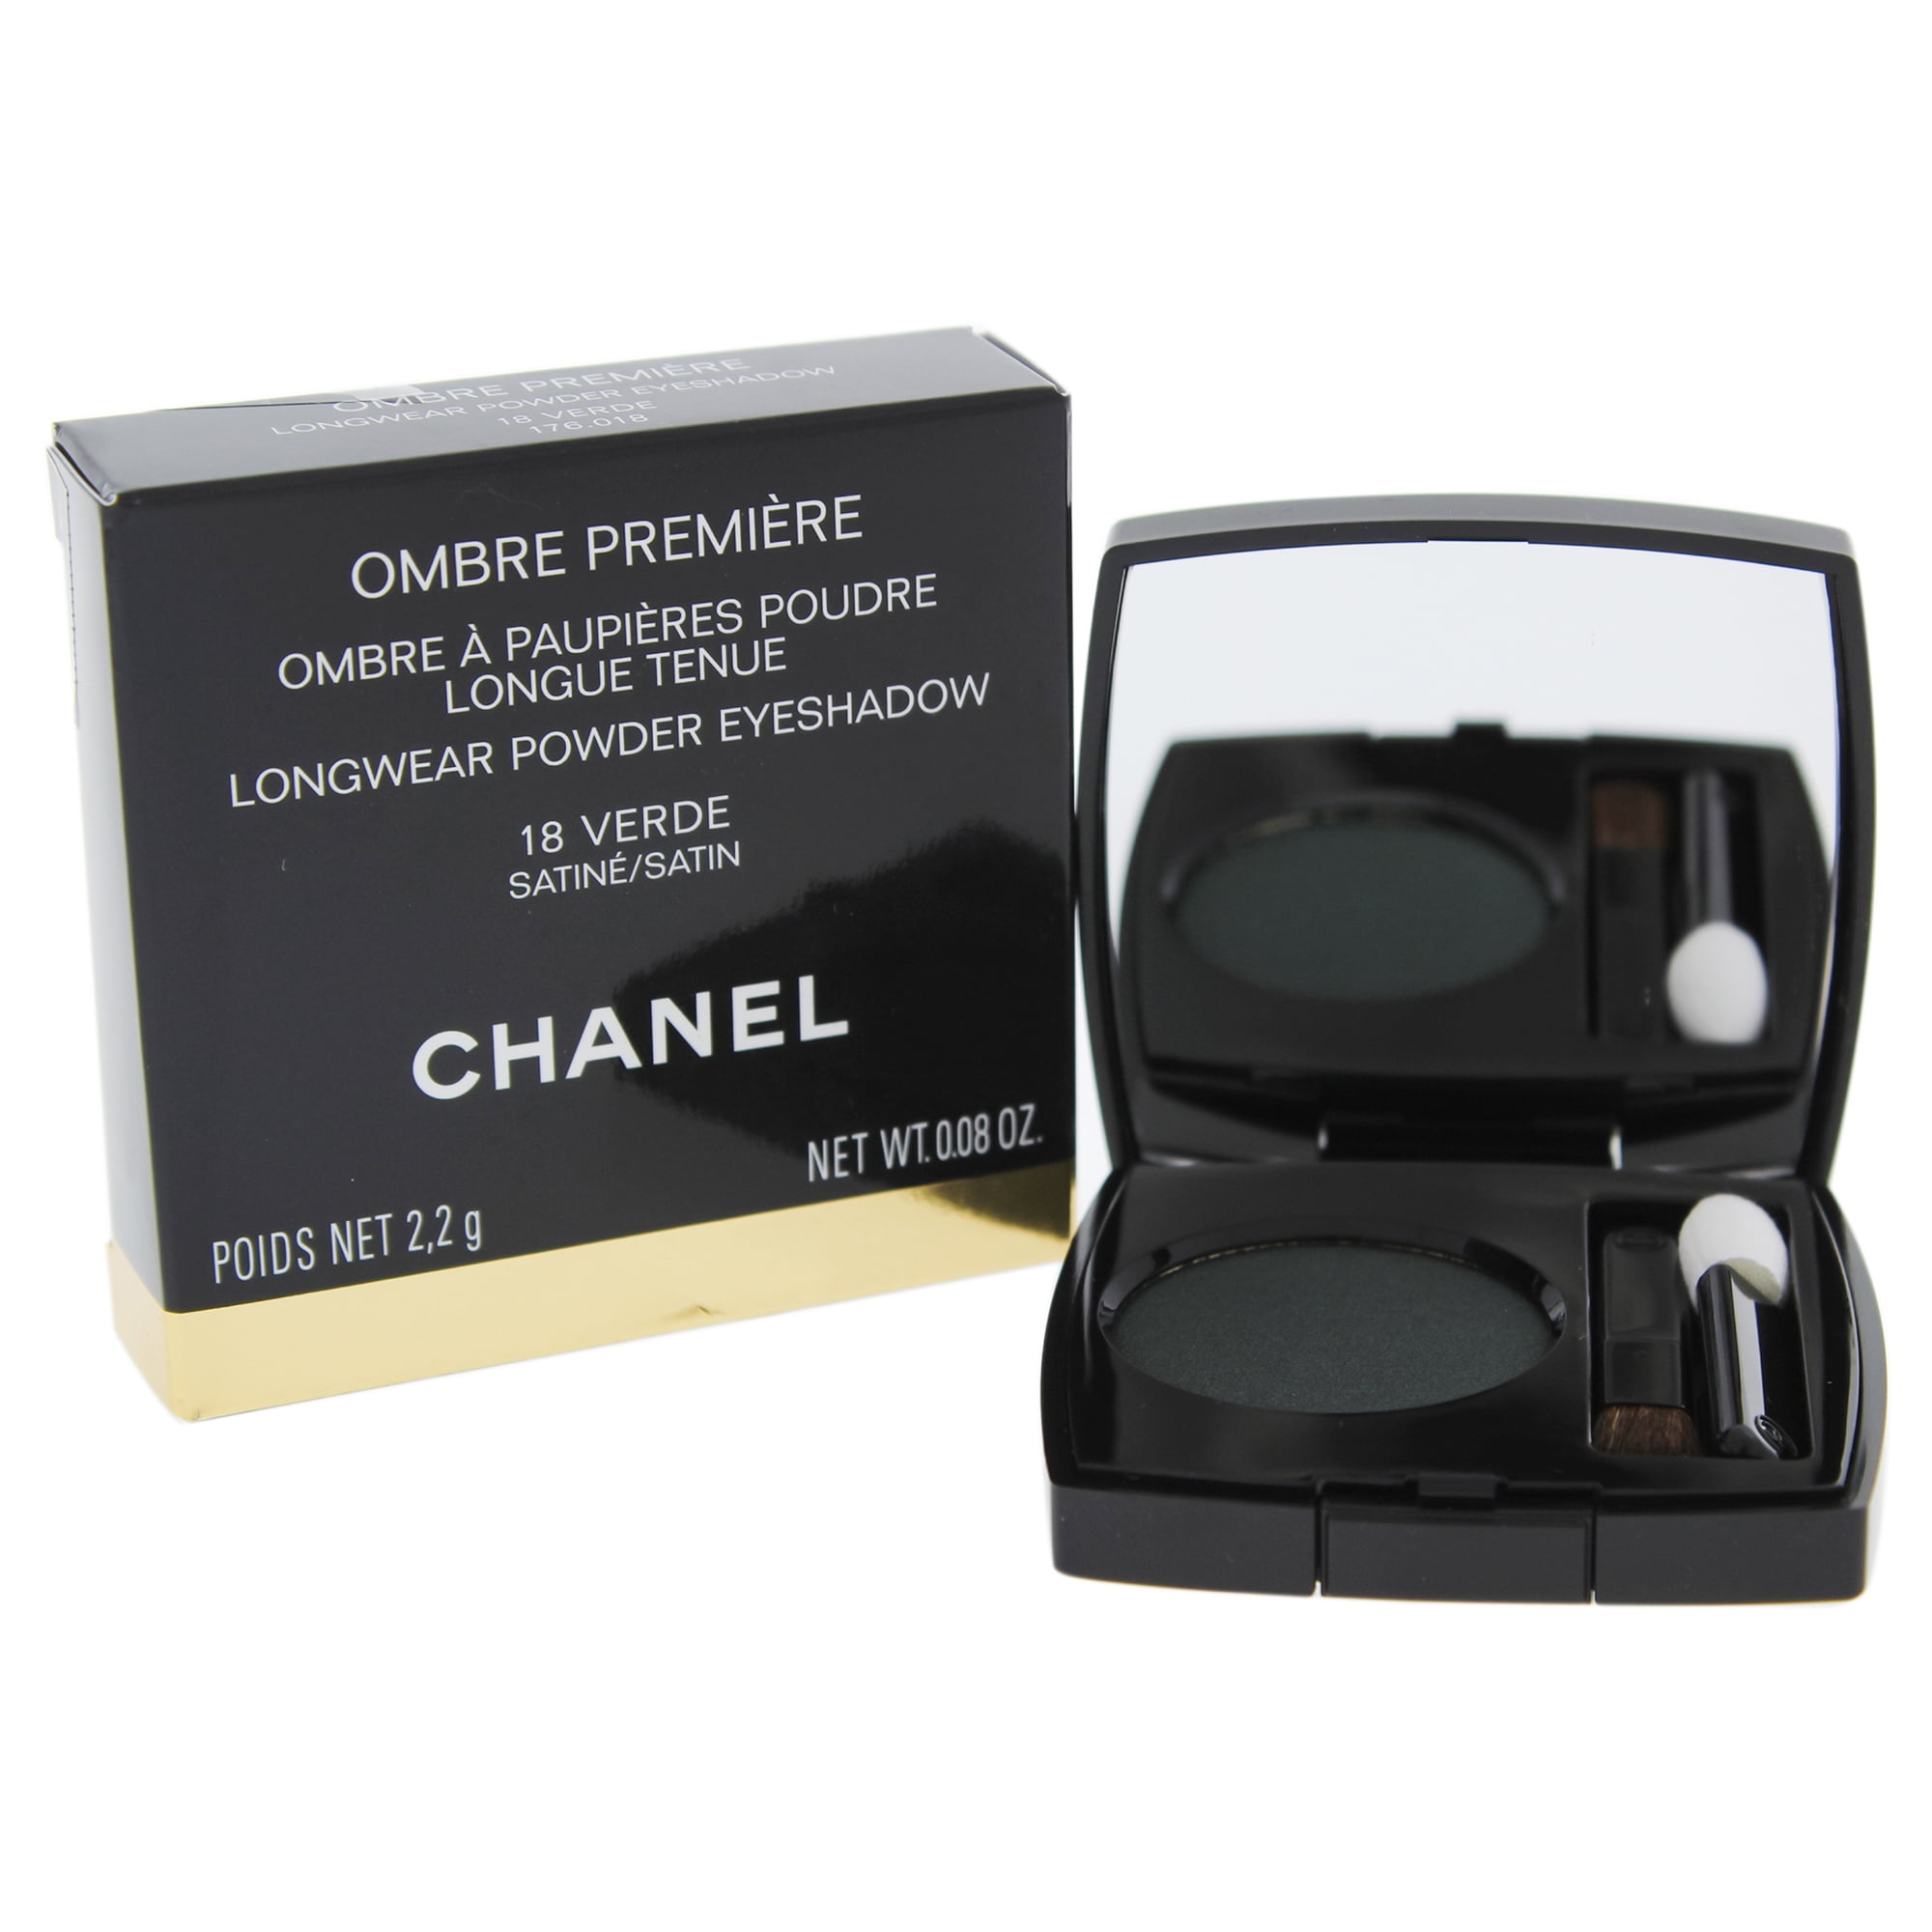 Ombre Premiere Long Wear Cream Eyeshadow by Chanel 802 Undertone : Beauty &  Personal Care 